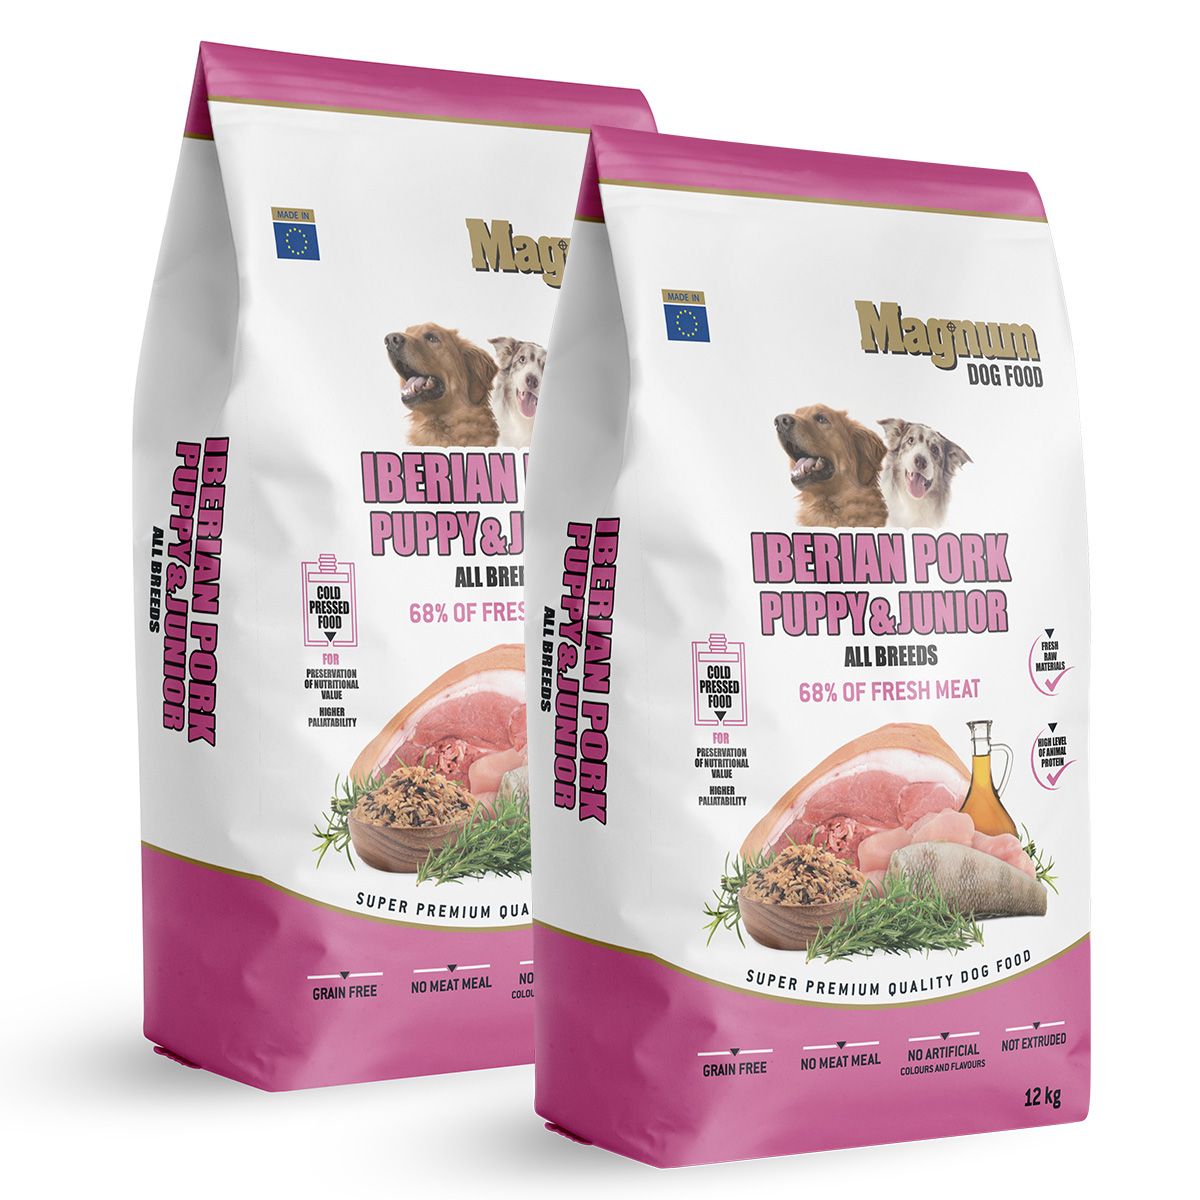 Magnum Iberian Pork Puppy & Junior 2x12kg Magnum dog food